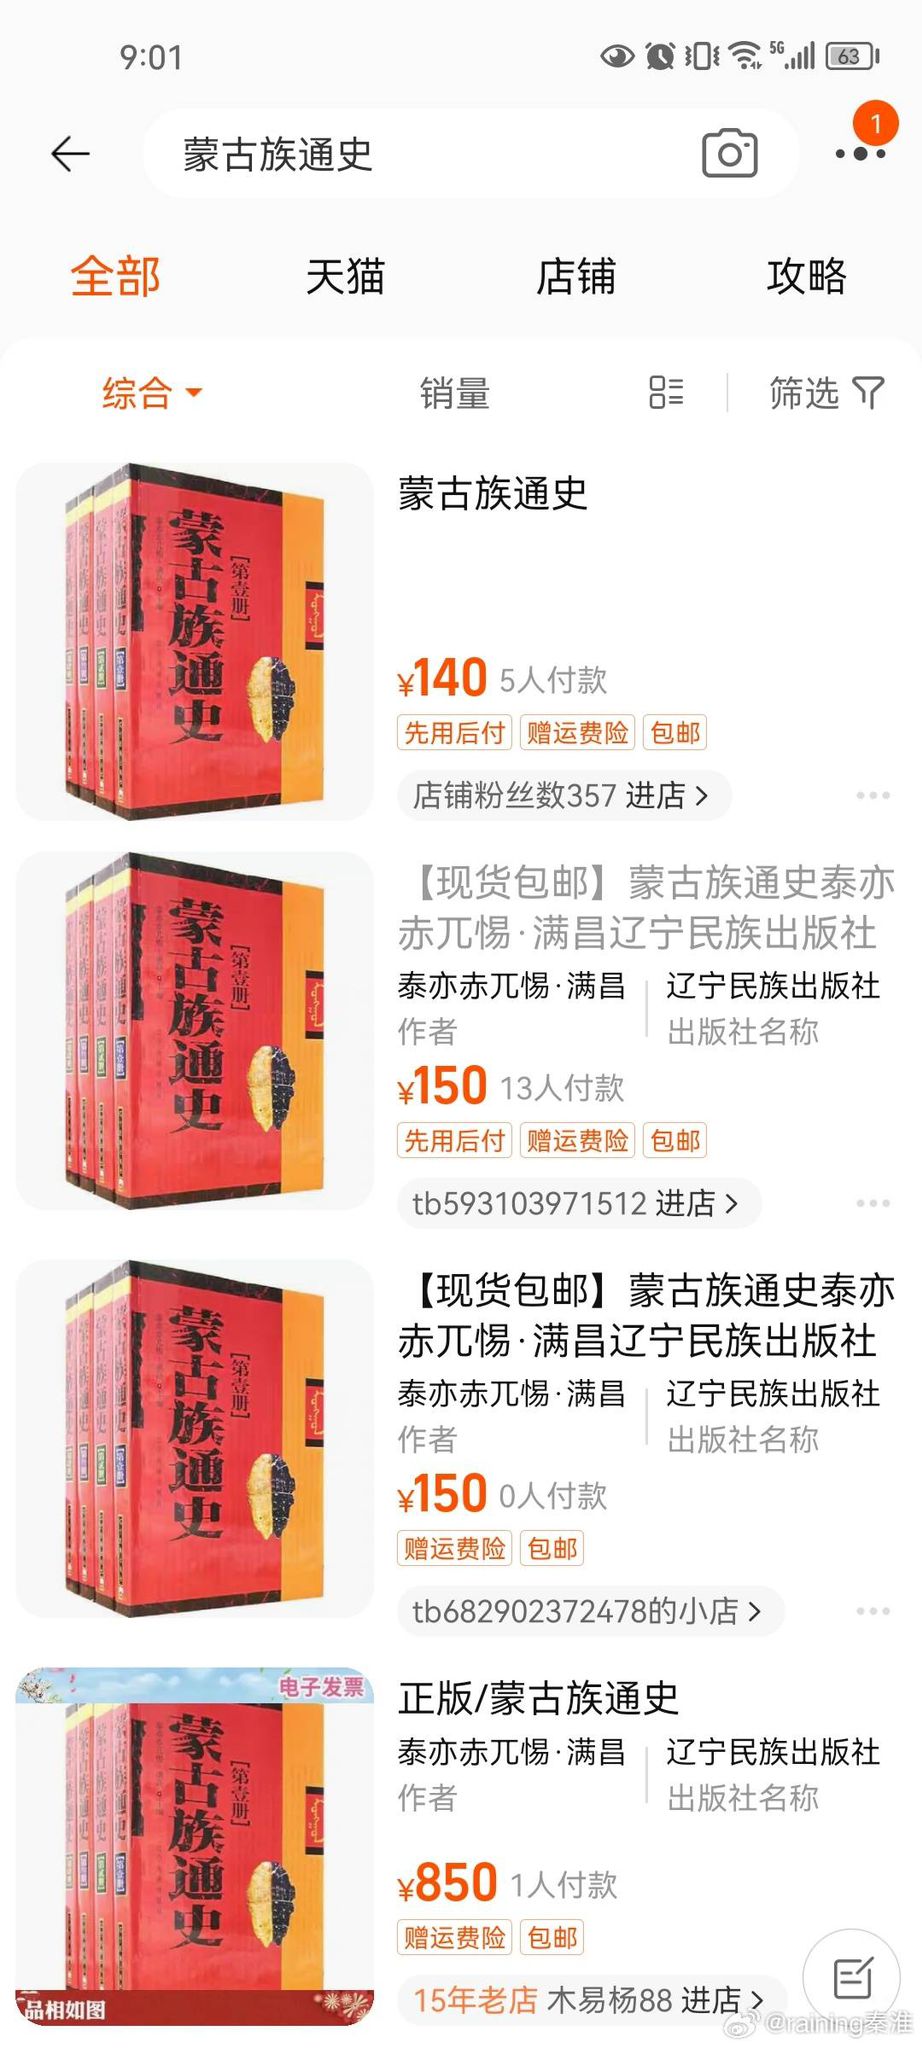 遼寧民族出版社出版的《蒙古族通史》被舉報。